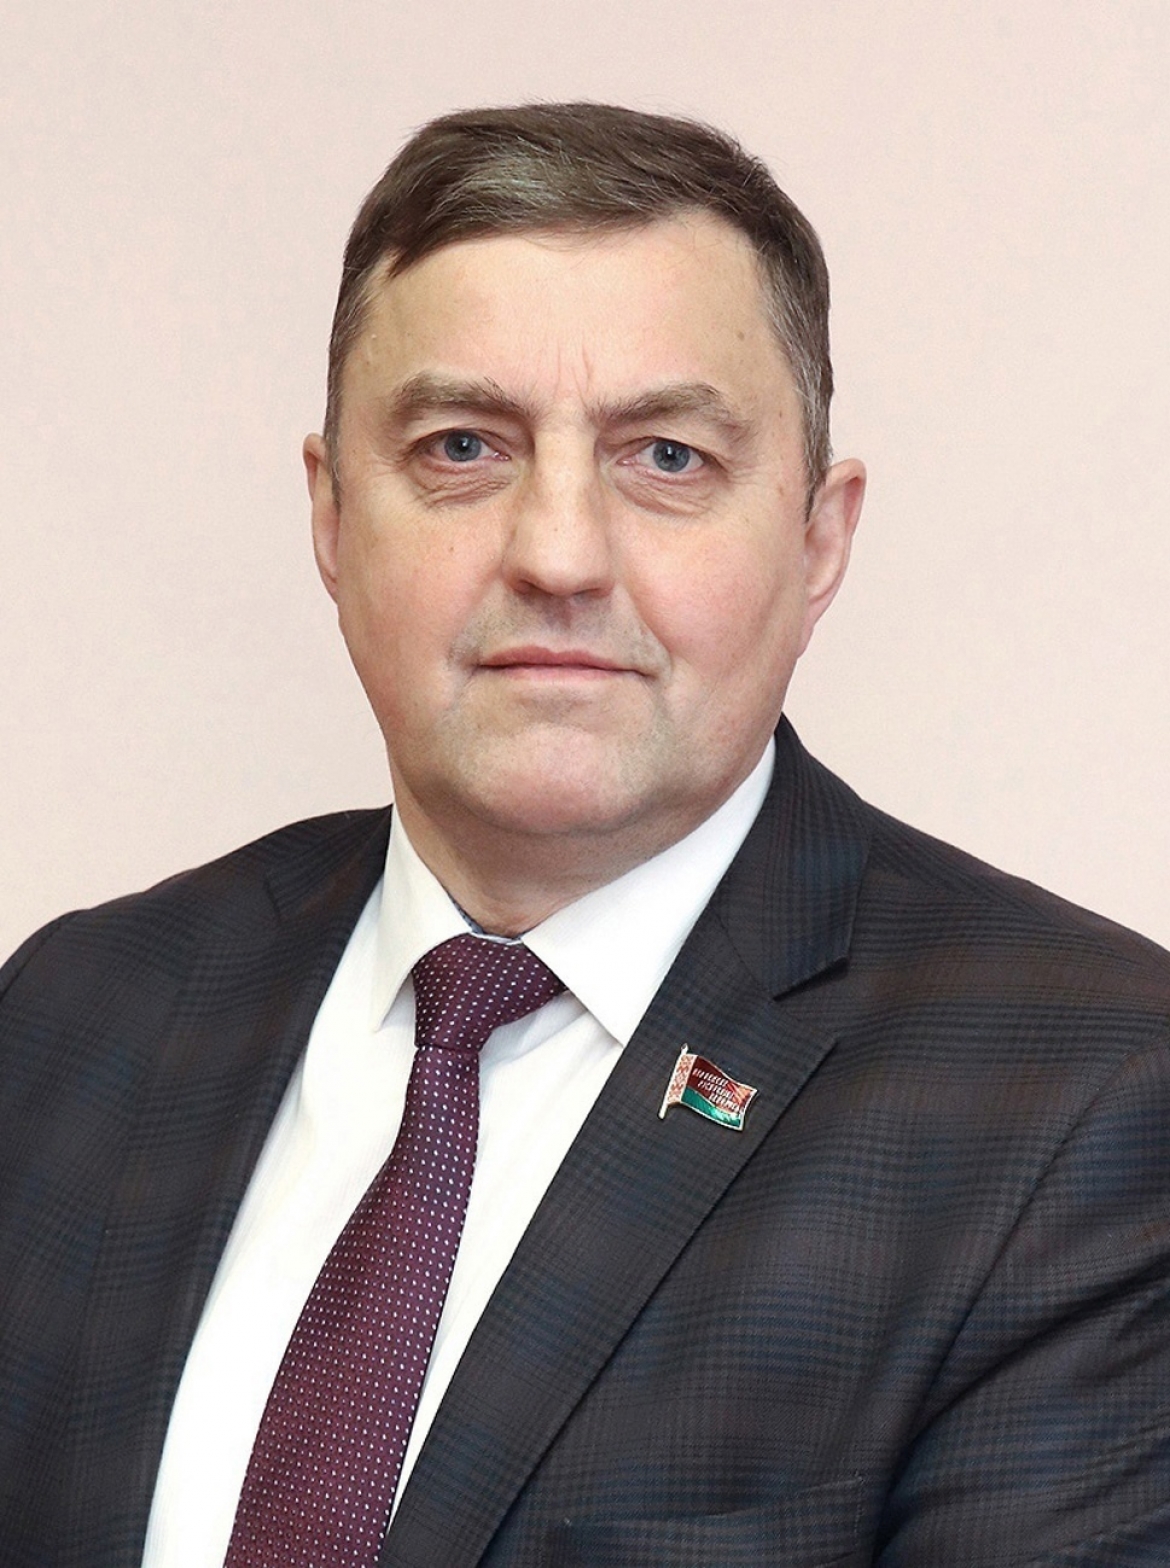 Александр Маркевич: ВНС создает прочную базу для эволюционного развития белорусского общества